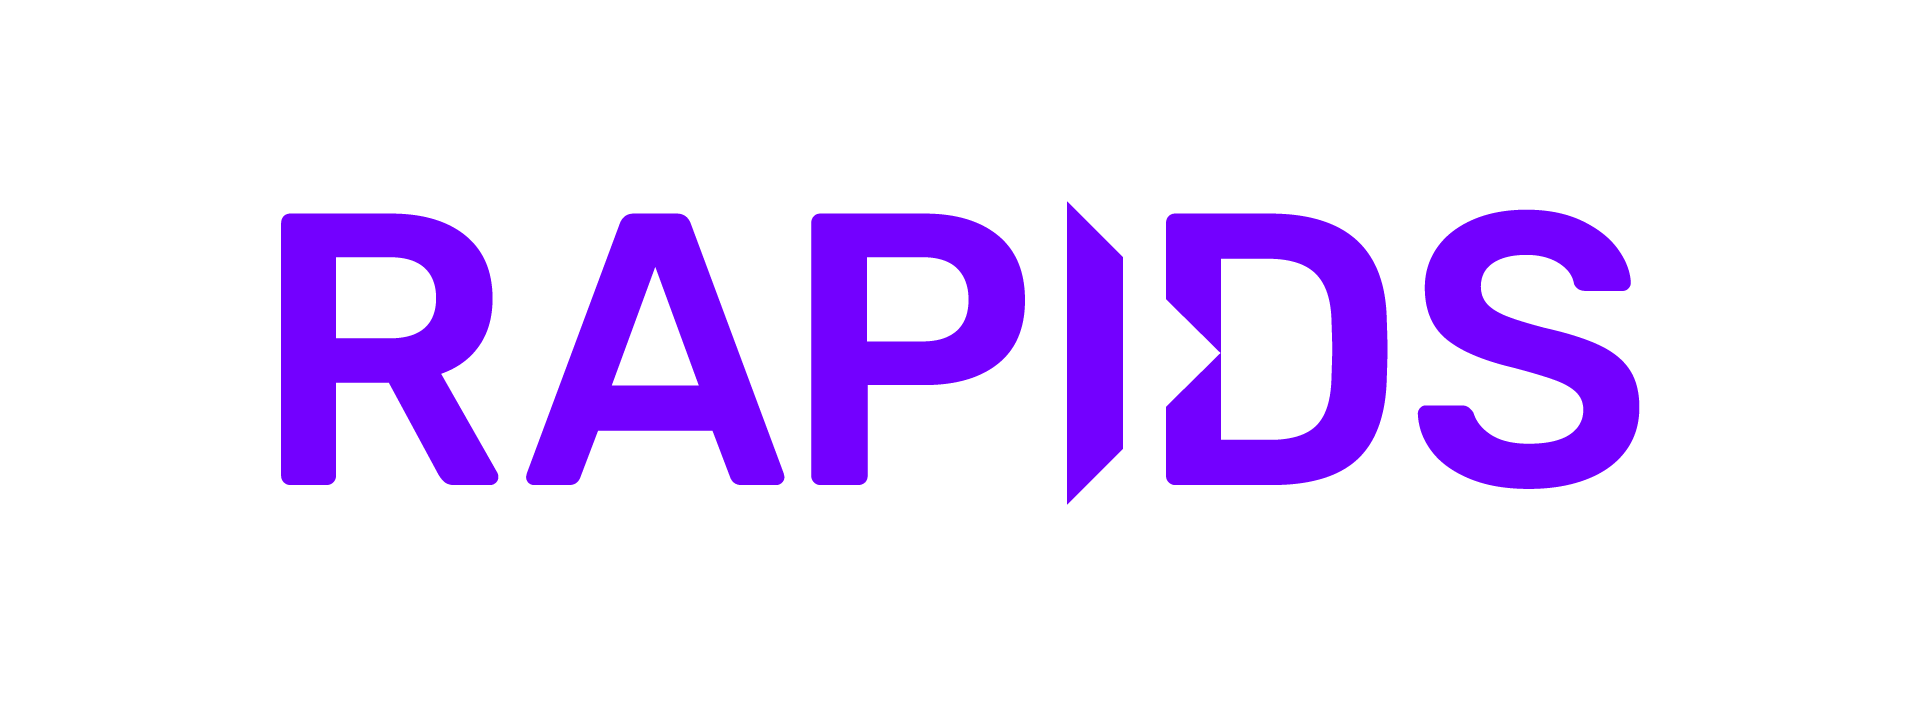 _images/RAPIDS-logo-purple.png